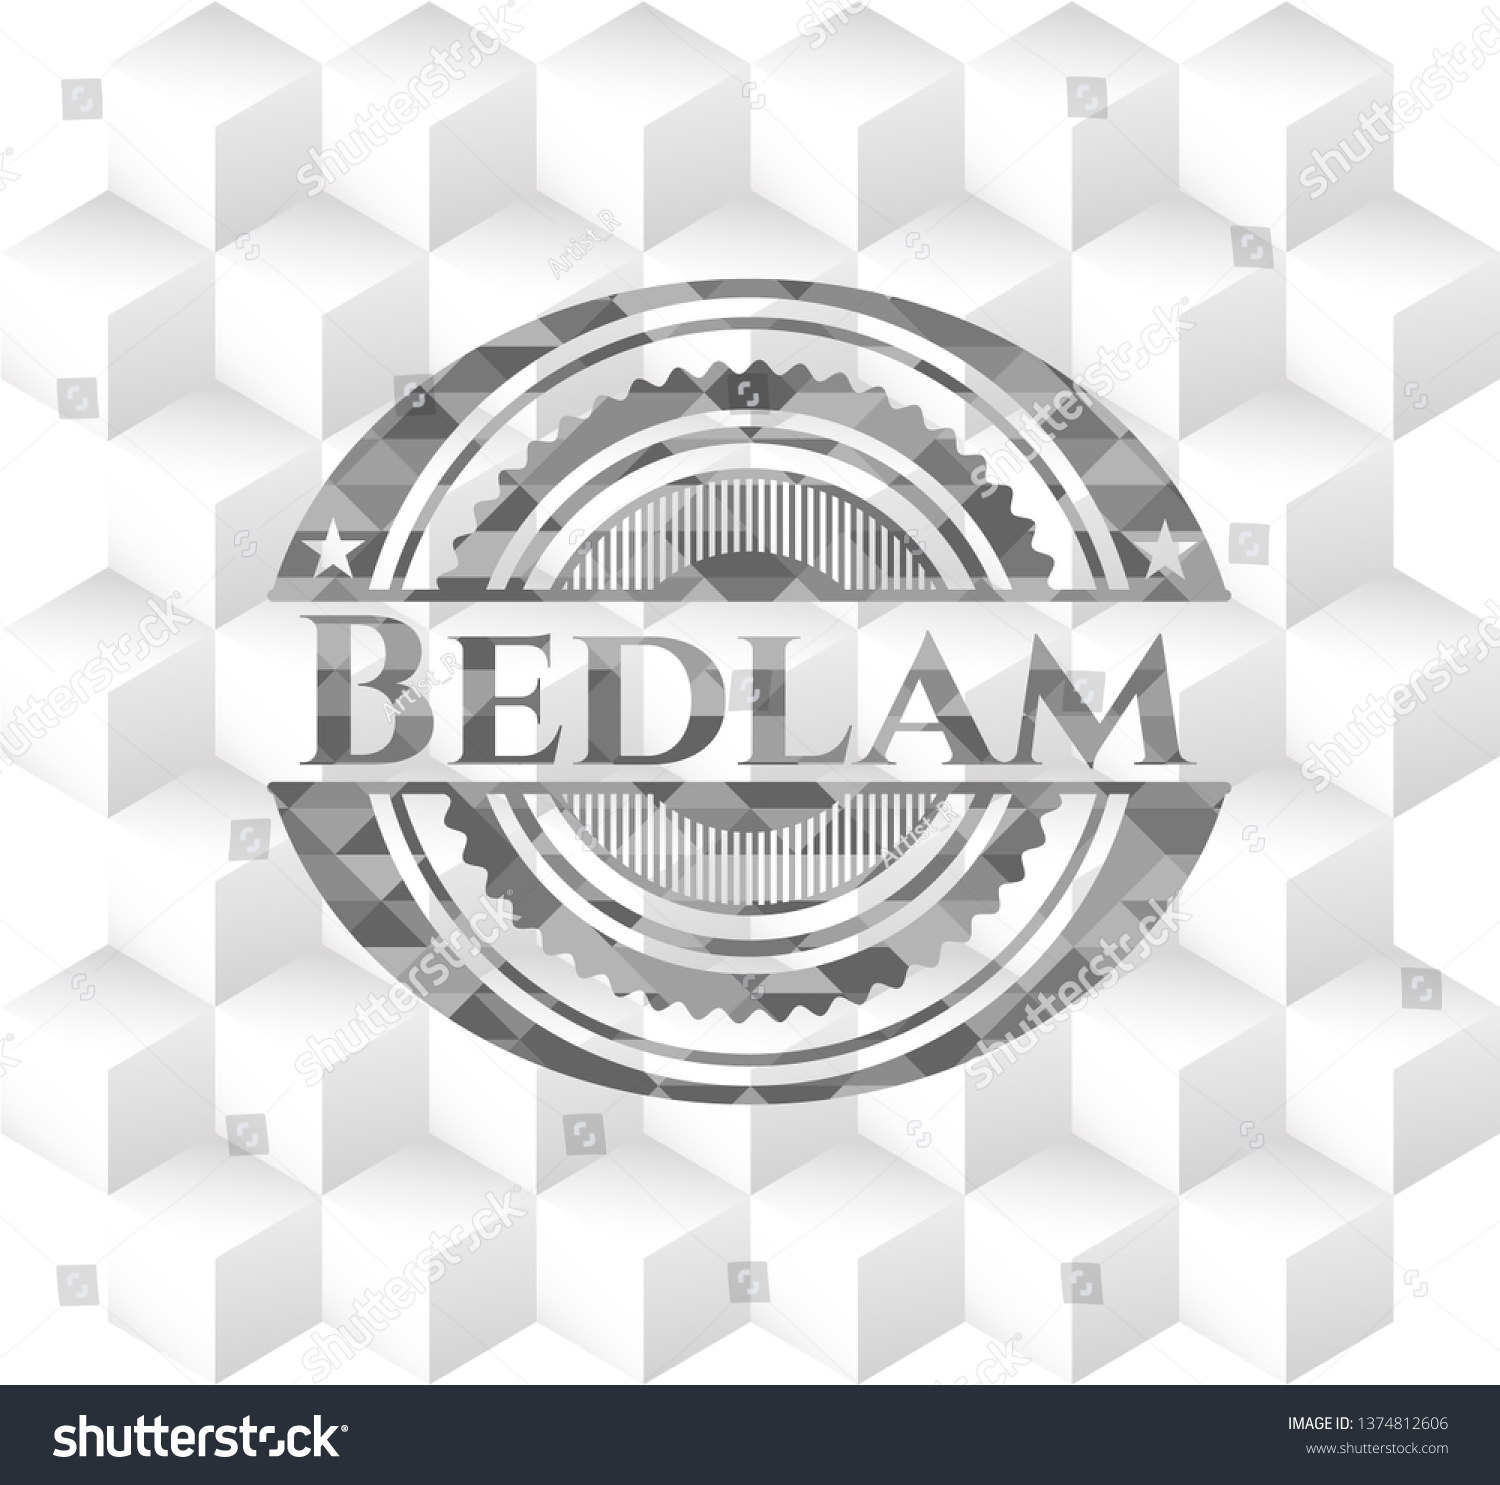 Bedlam Grey Emblem Vintage Geometric Cube Stock Vector Royalty